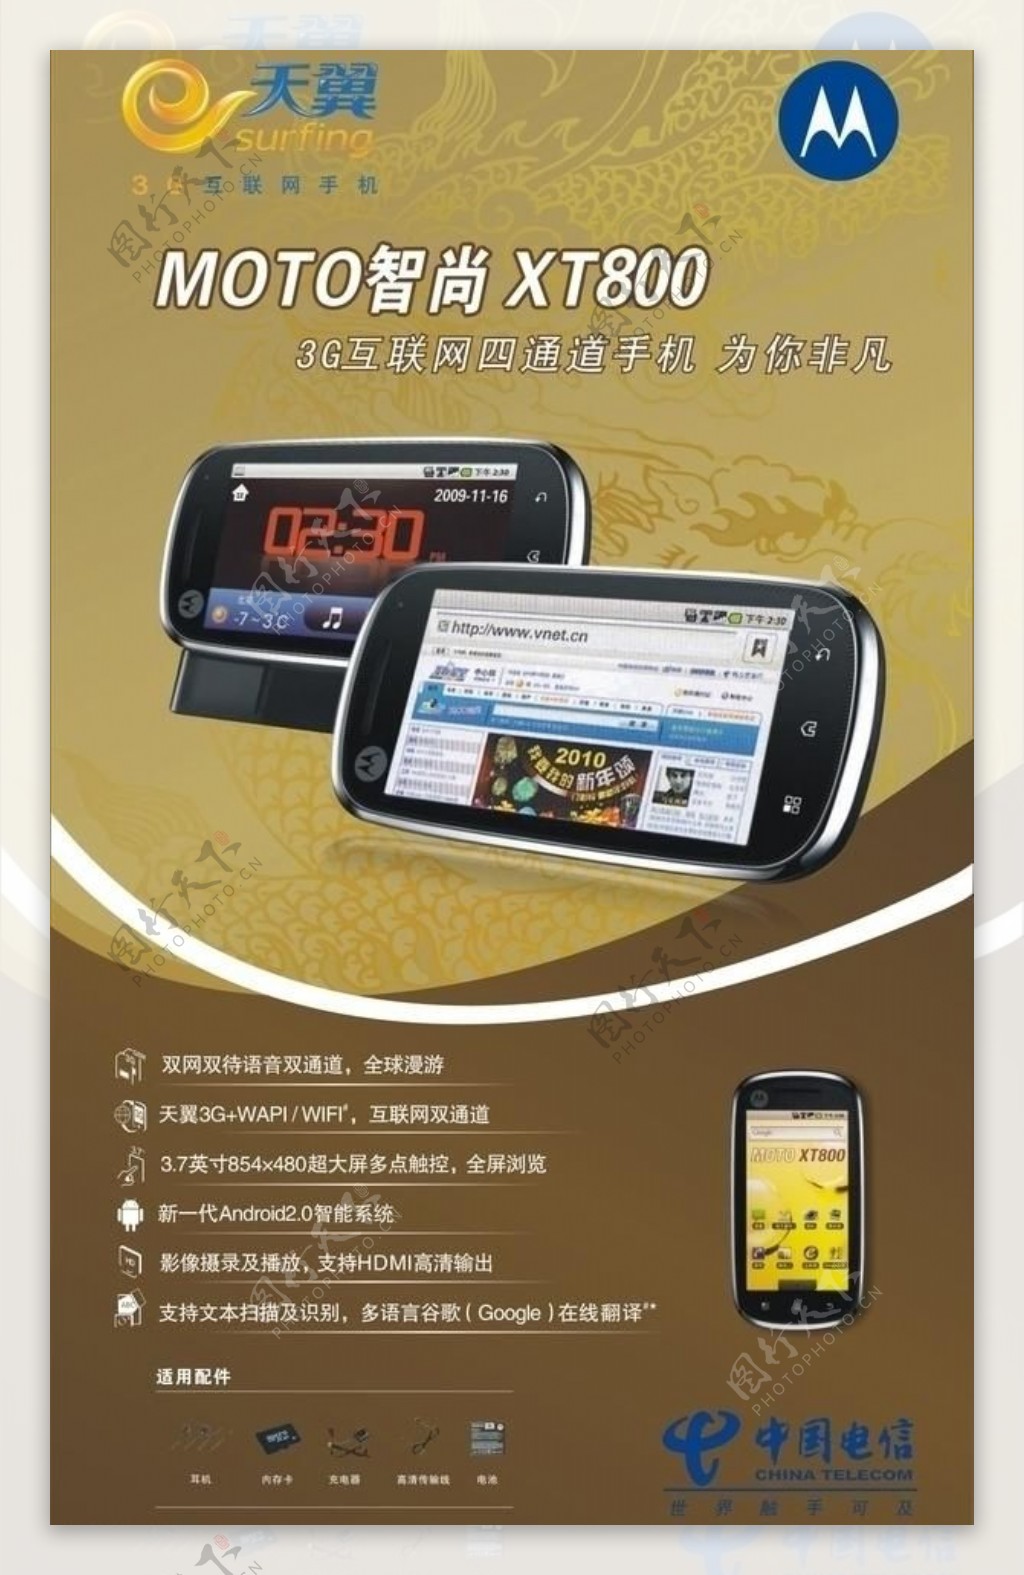 中国电信翼起来3g手机广告图片